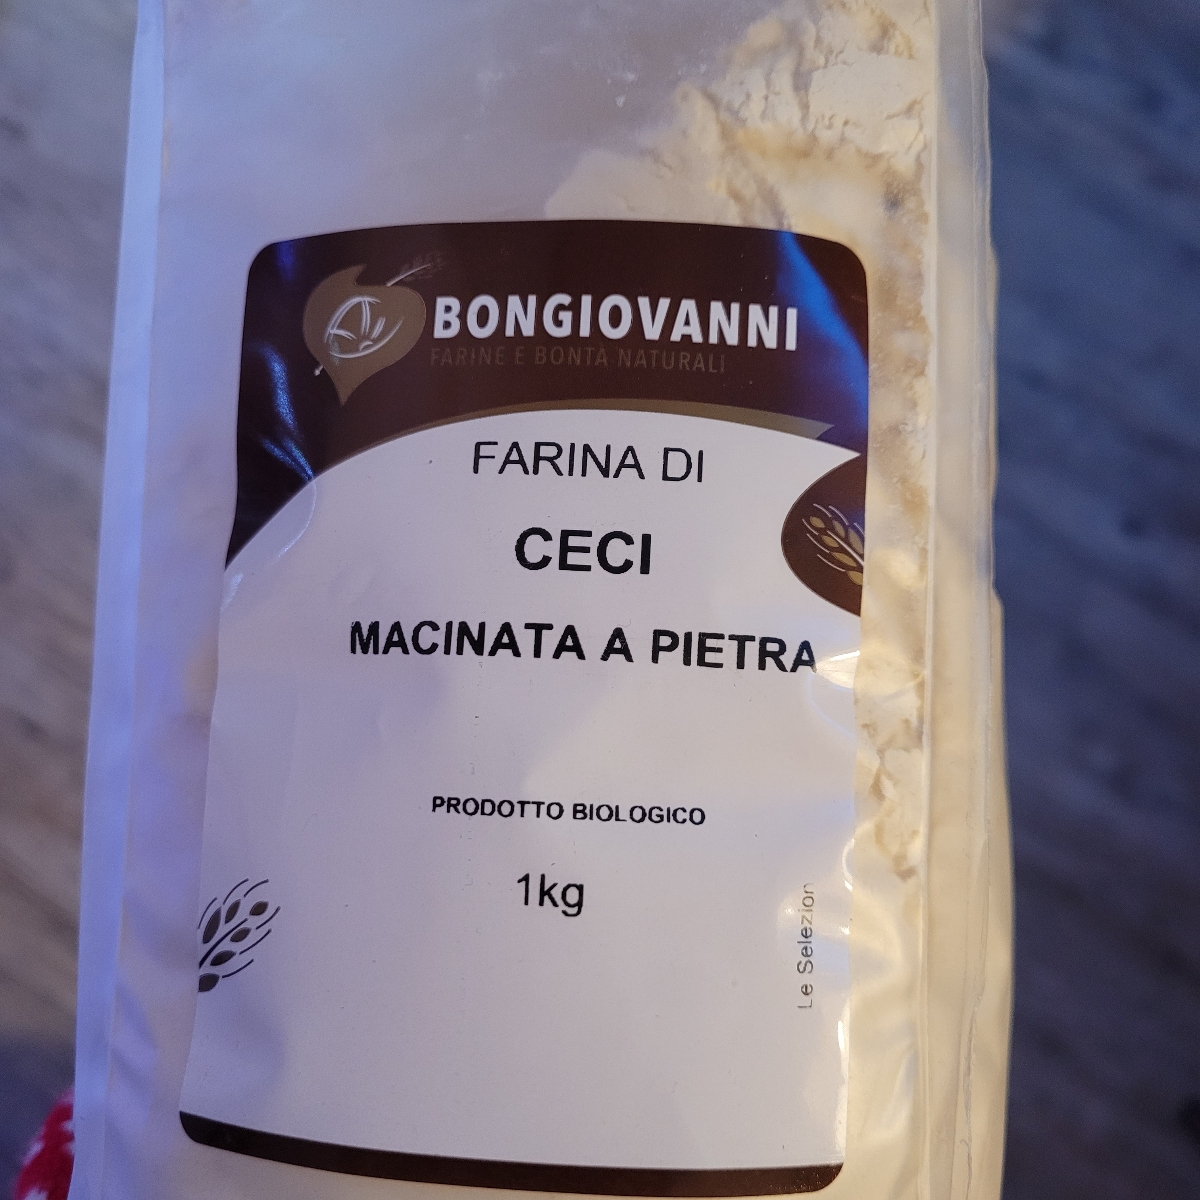 Bongiovanni Farina di ceci macinata a pietra Bongiovanni Reviews